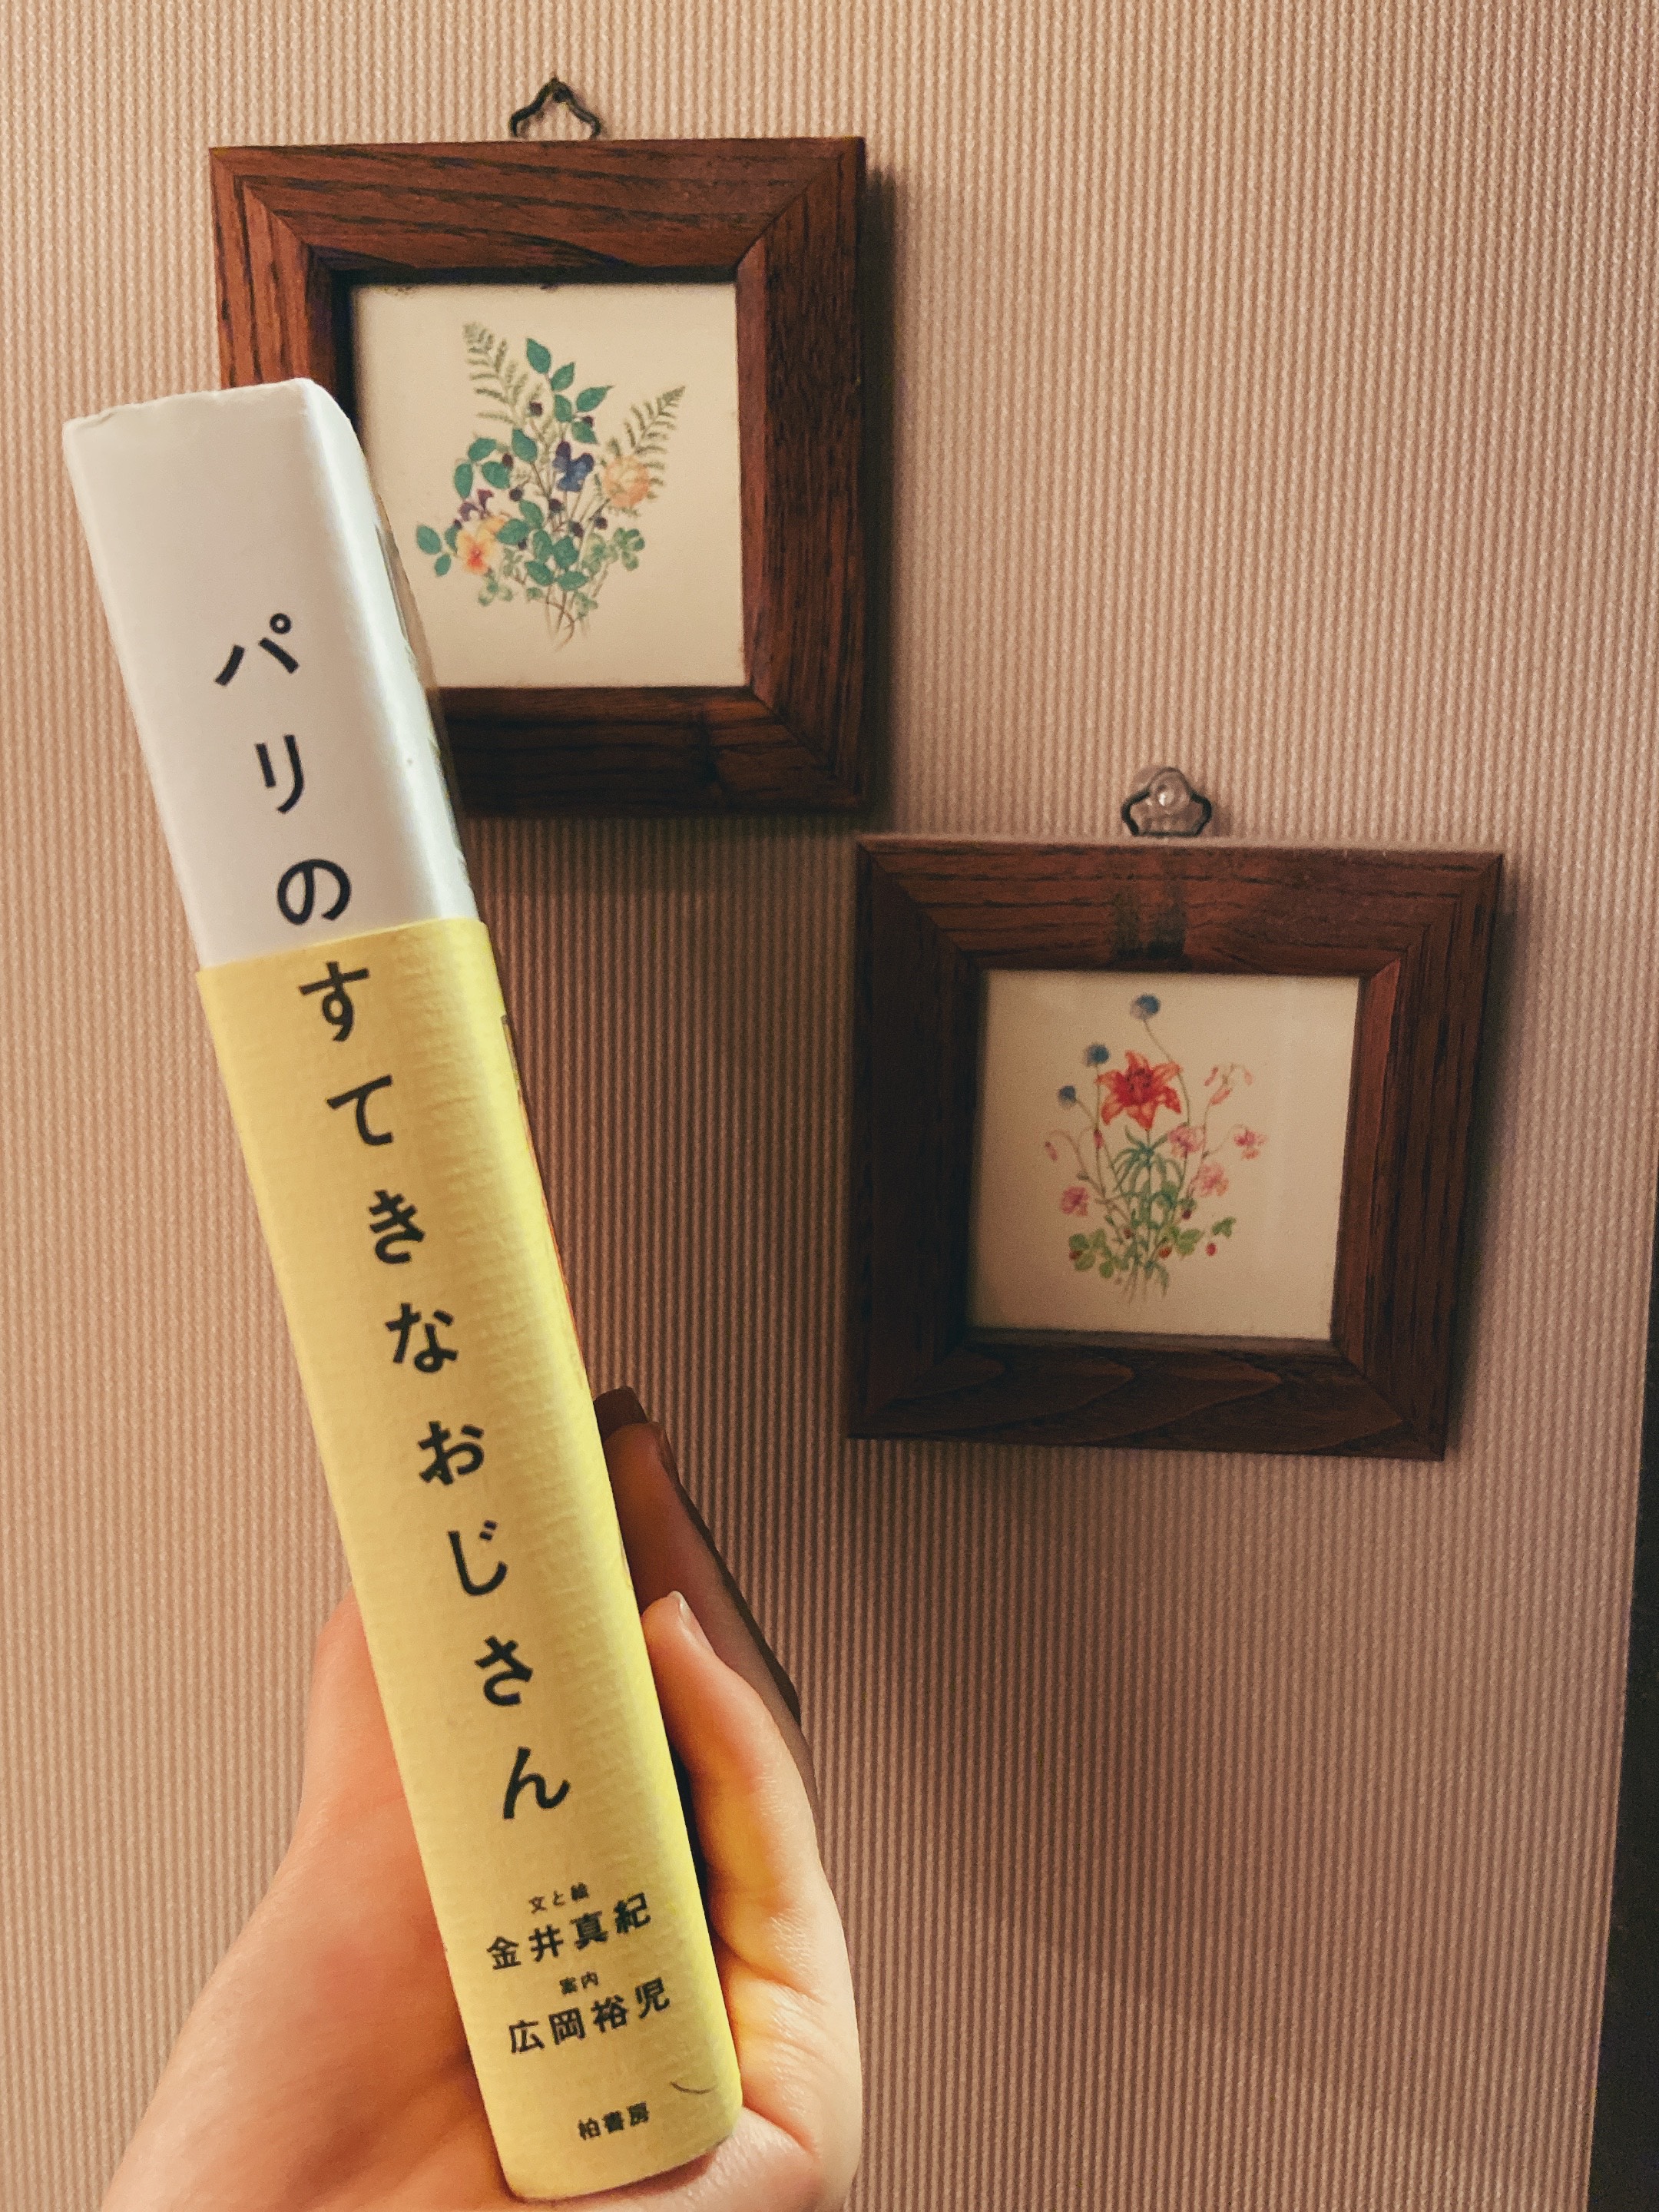 日文ブックリレー第6回目 昭和女子大学 人間文化学部 日本語日本文学科 日文便り